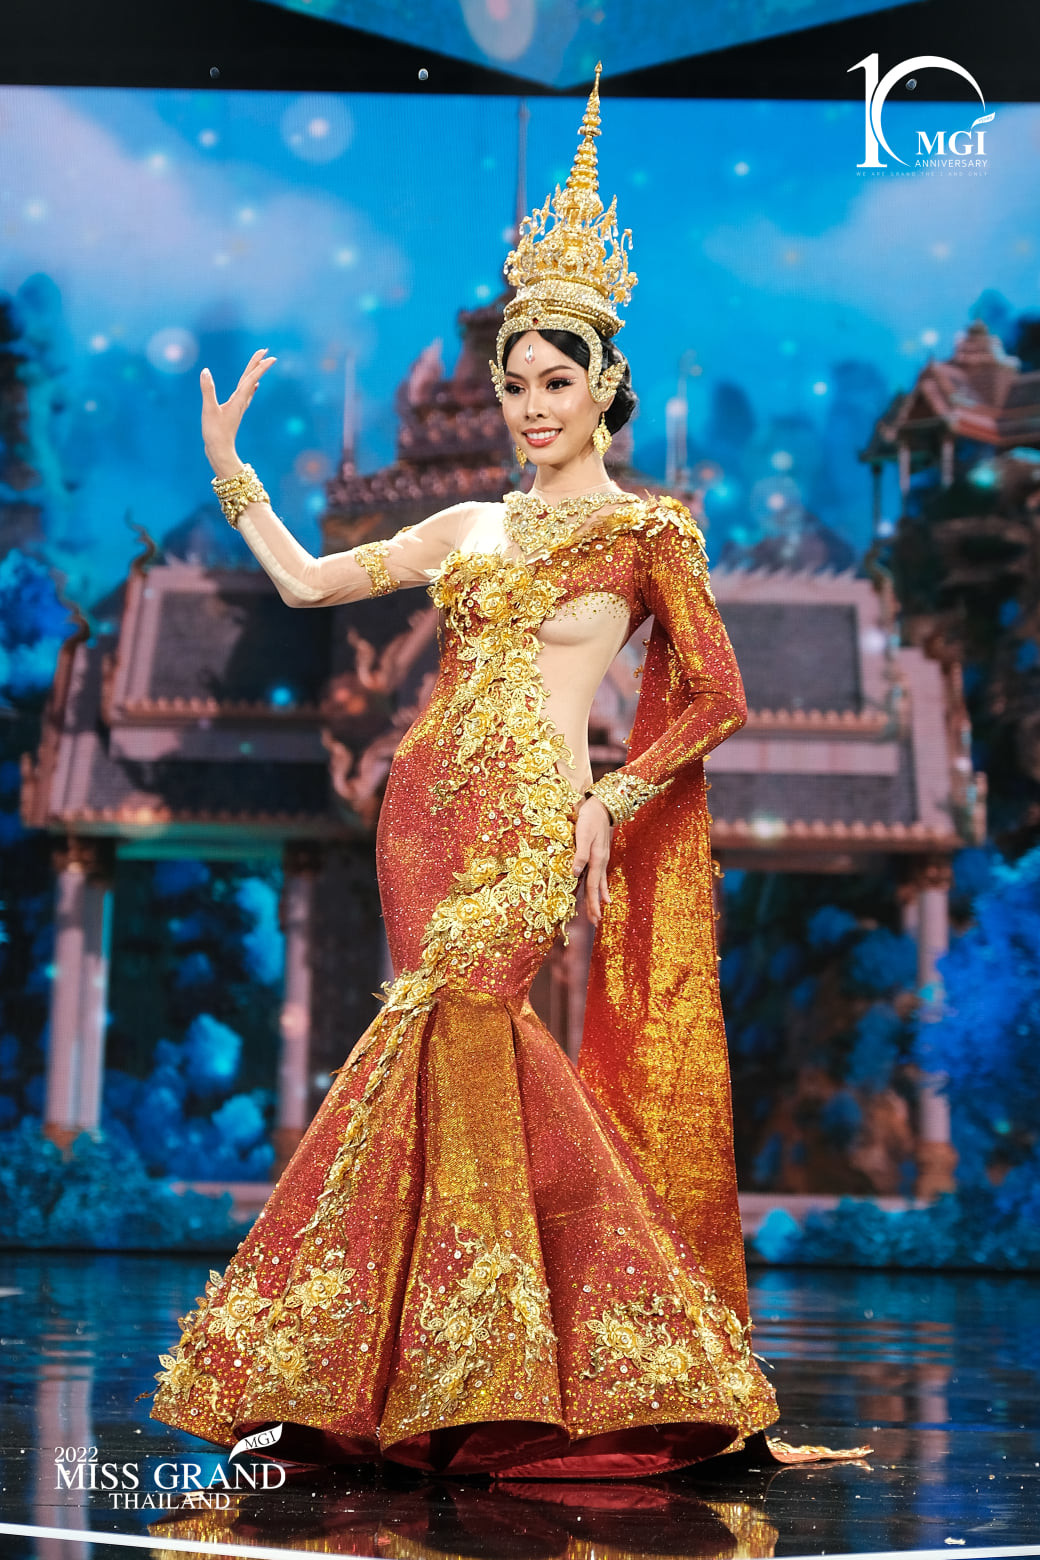 trajes tipicos de candidatas a miss grand thailand 2022. - Página 2 VZQGob